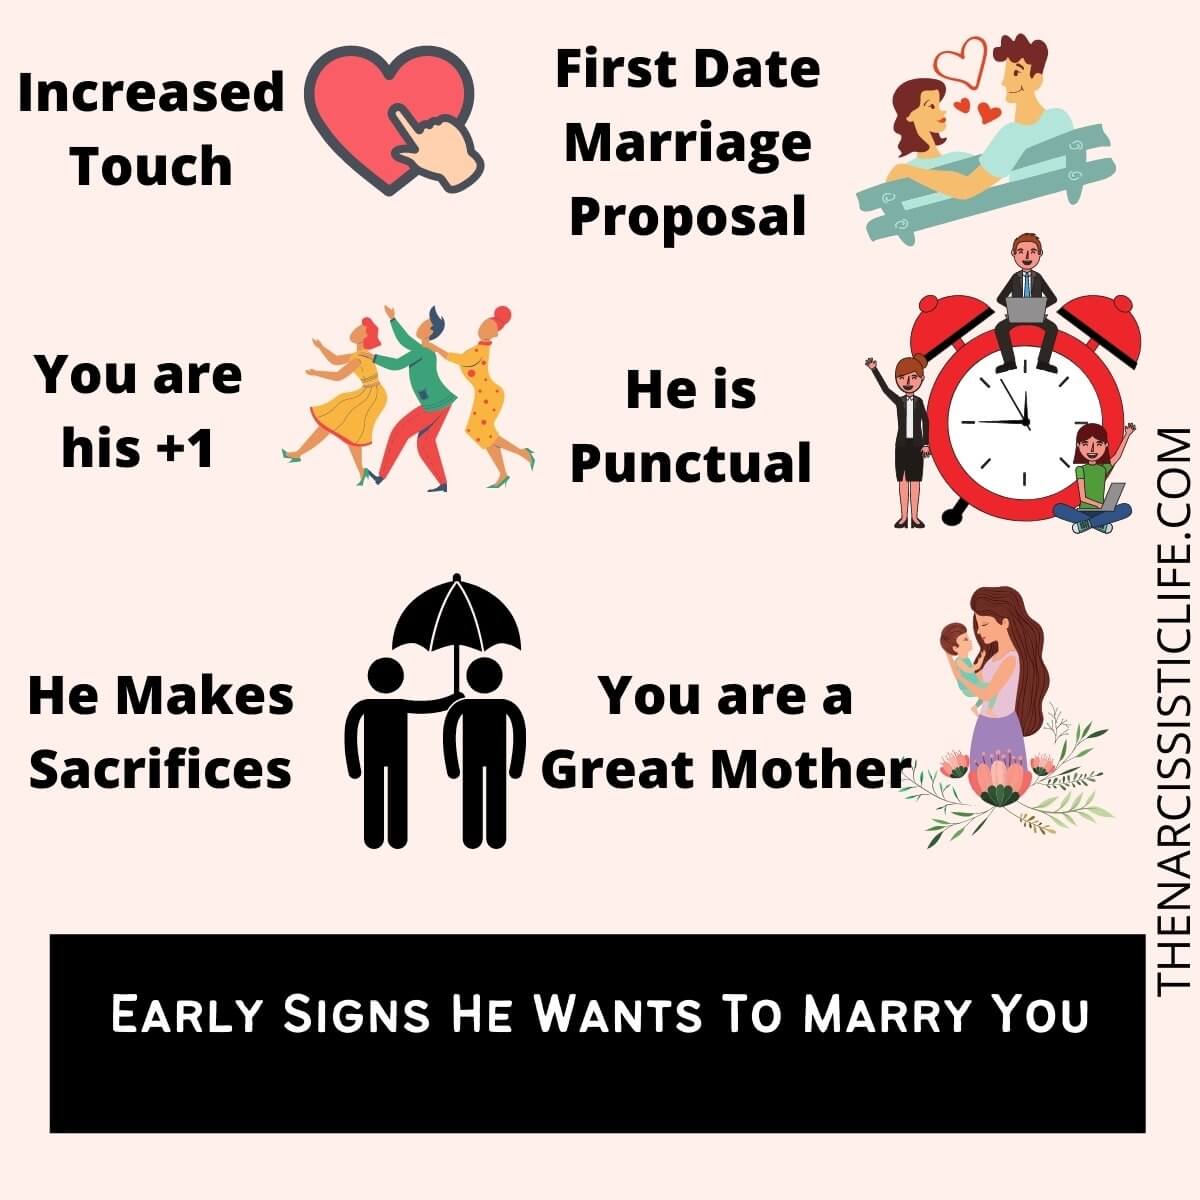 "Voudra-t-il m'épouser un jour ?": 15 façons de le savoir !